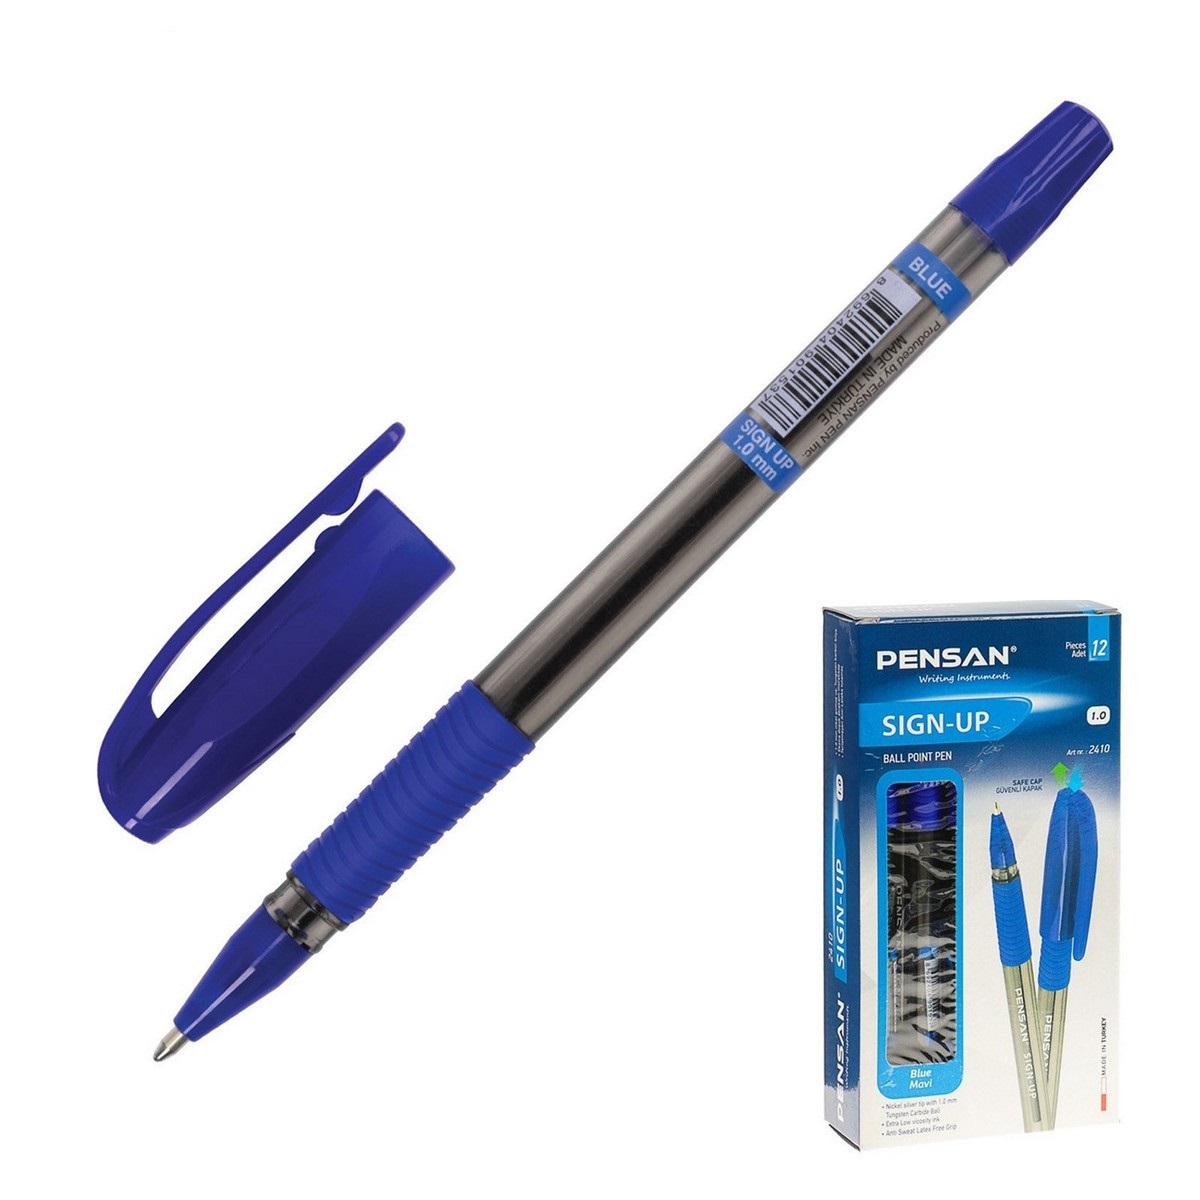 Ручка шариковая Pensan Sign-up 3494034, синяя, 1 мм, 1 шт.